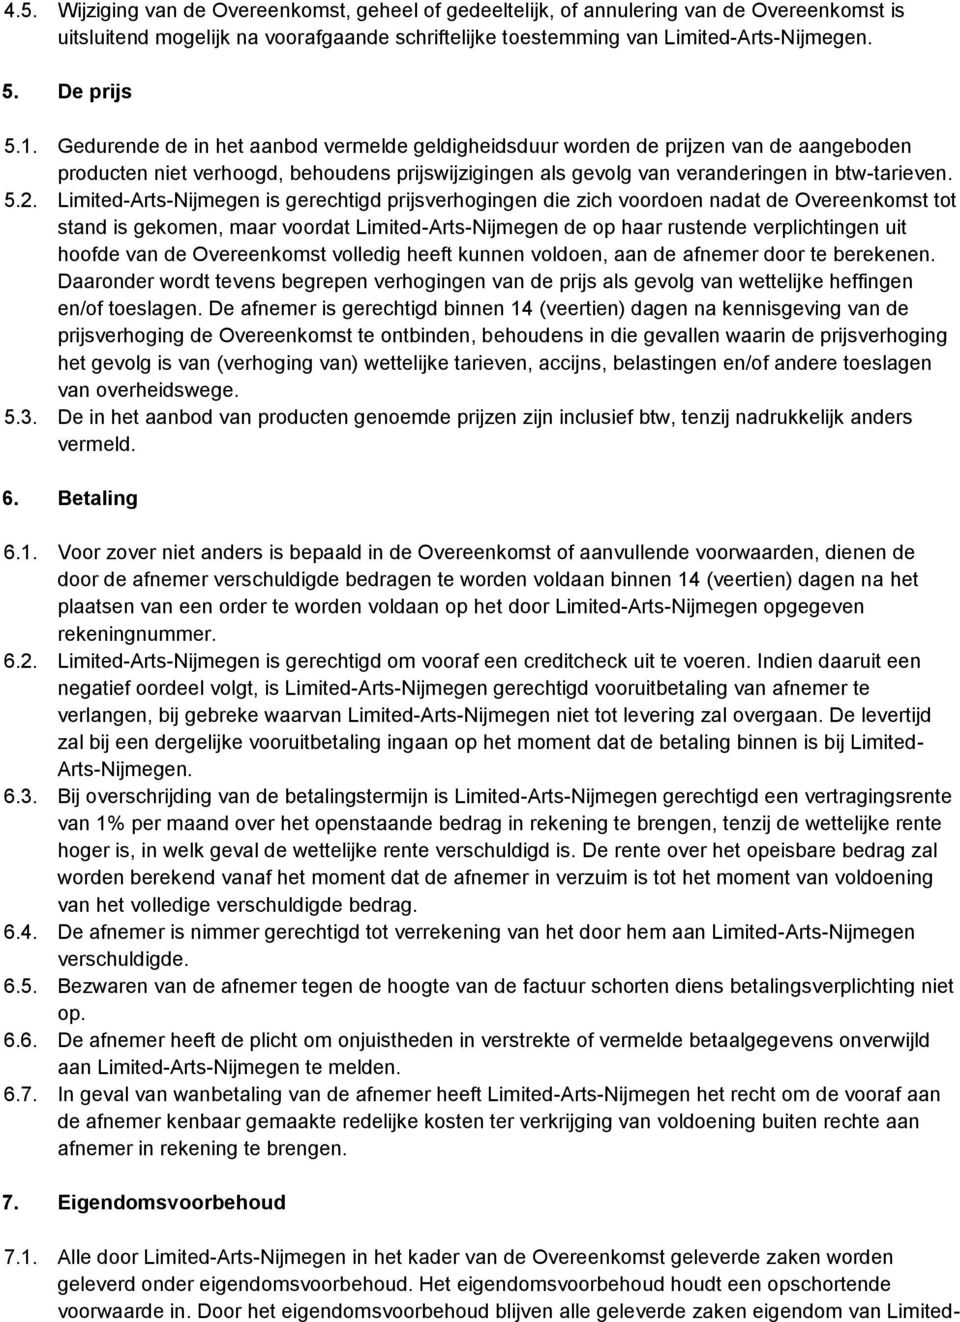 5.2. Limited-Arts-Nijmegen is gerechtigd prijsverhogingen die zich voordoen nadat de Overeenkomst tot stand is gekomen, maar voordat Limited-Arts-Nijmegen de op haar rustende verplichtingen uit